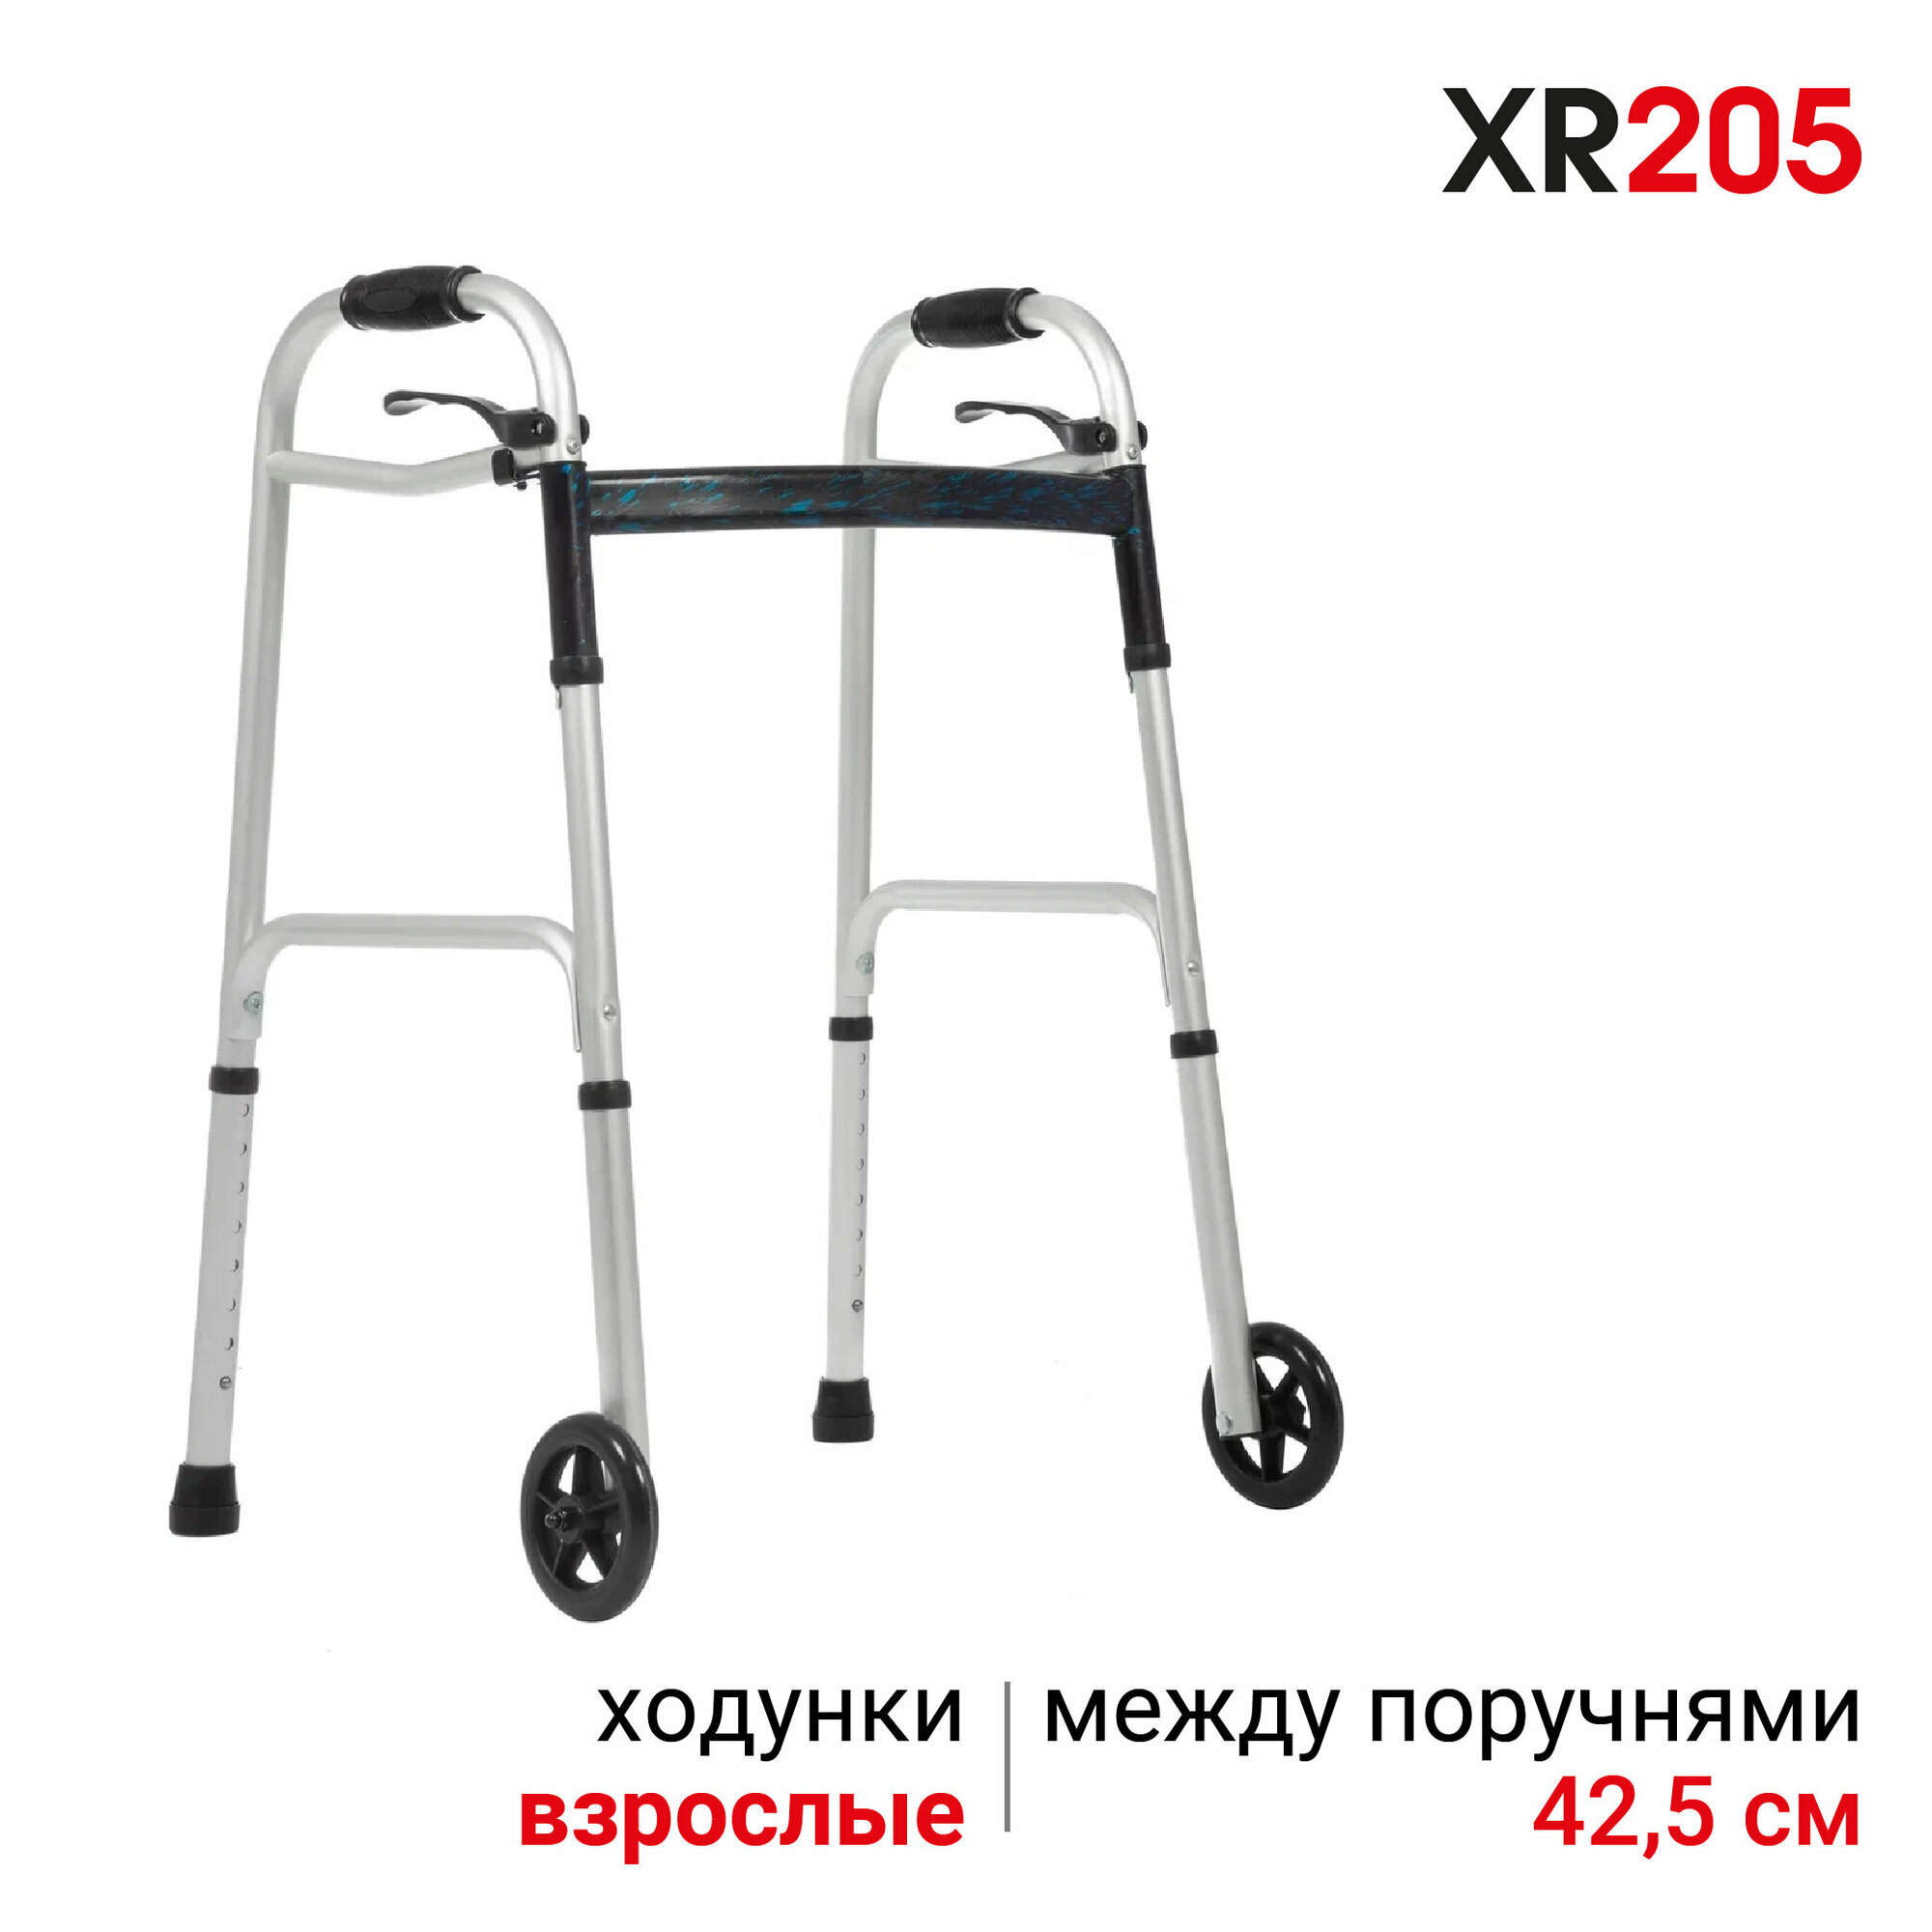 Ходунки роллаторы для пожилых и инвалидов Ortonica XR 205 складные нешагающие легкие алюминиевые для реабилитации после травм или инсульта код ФСС 06-10-02